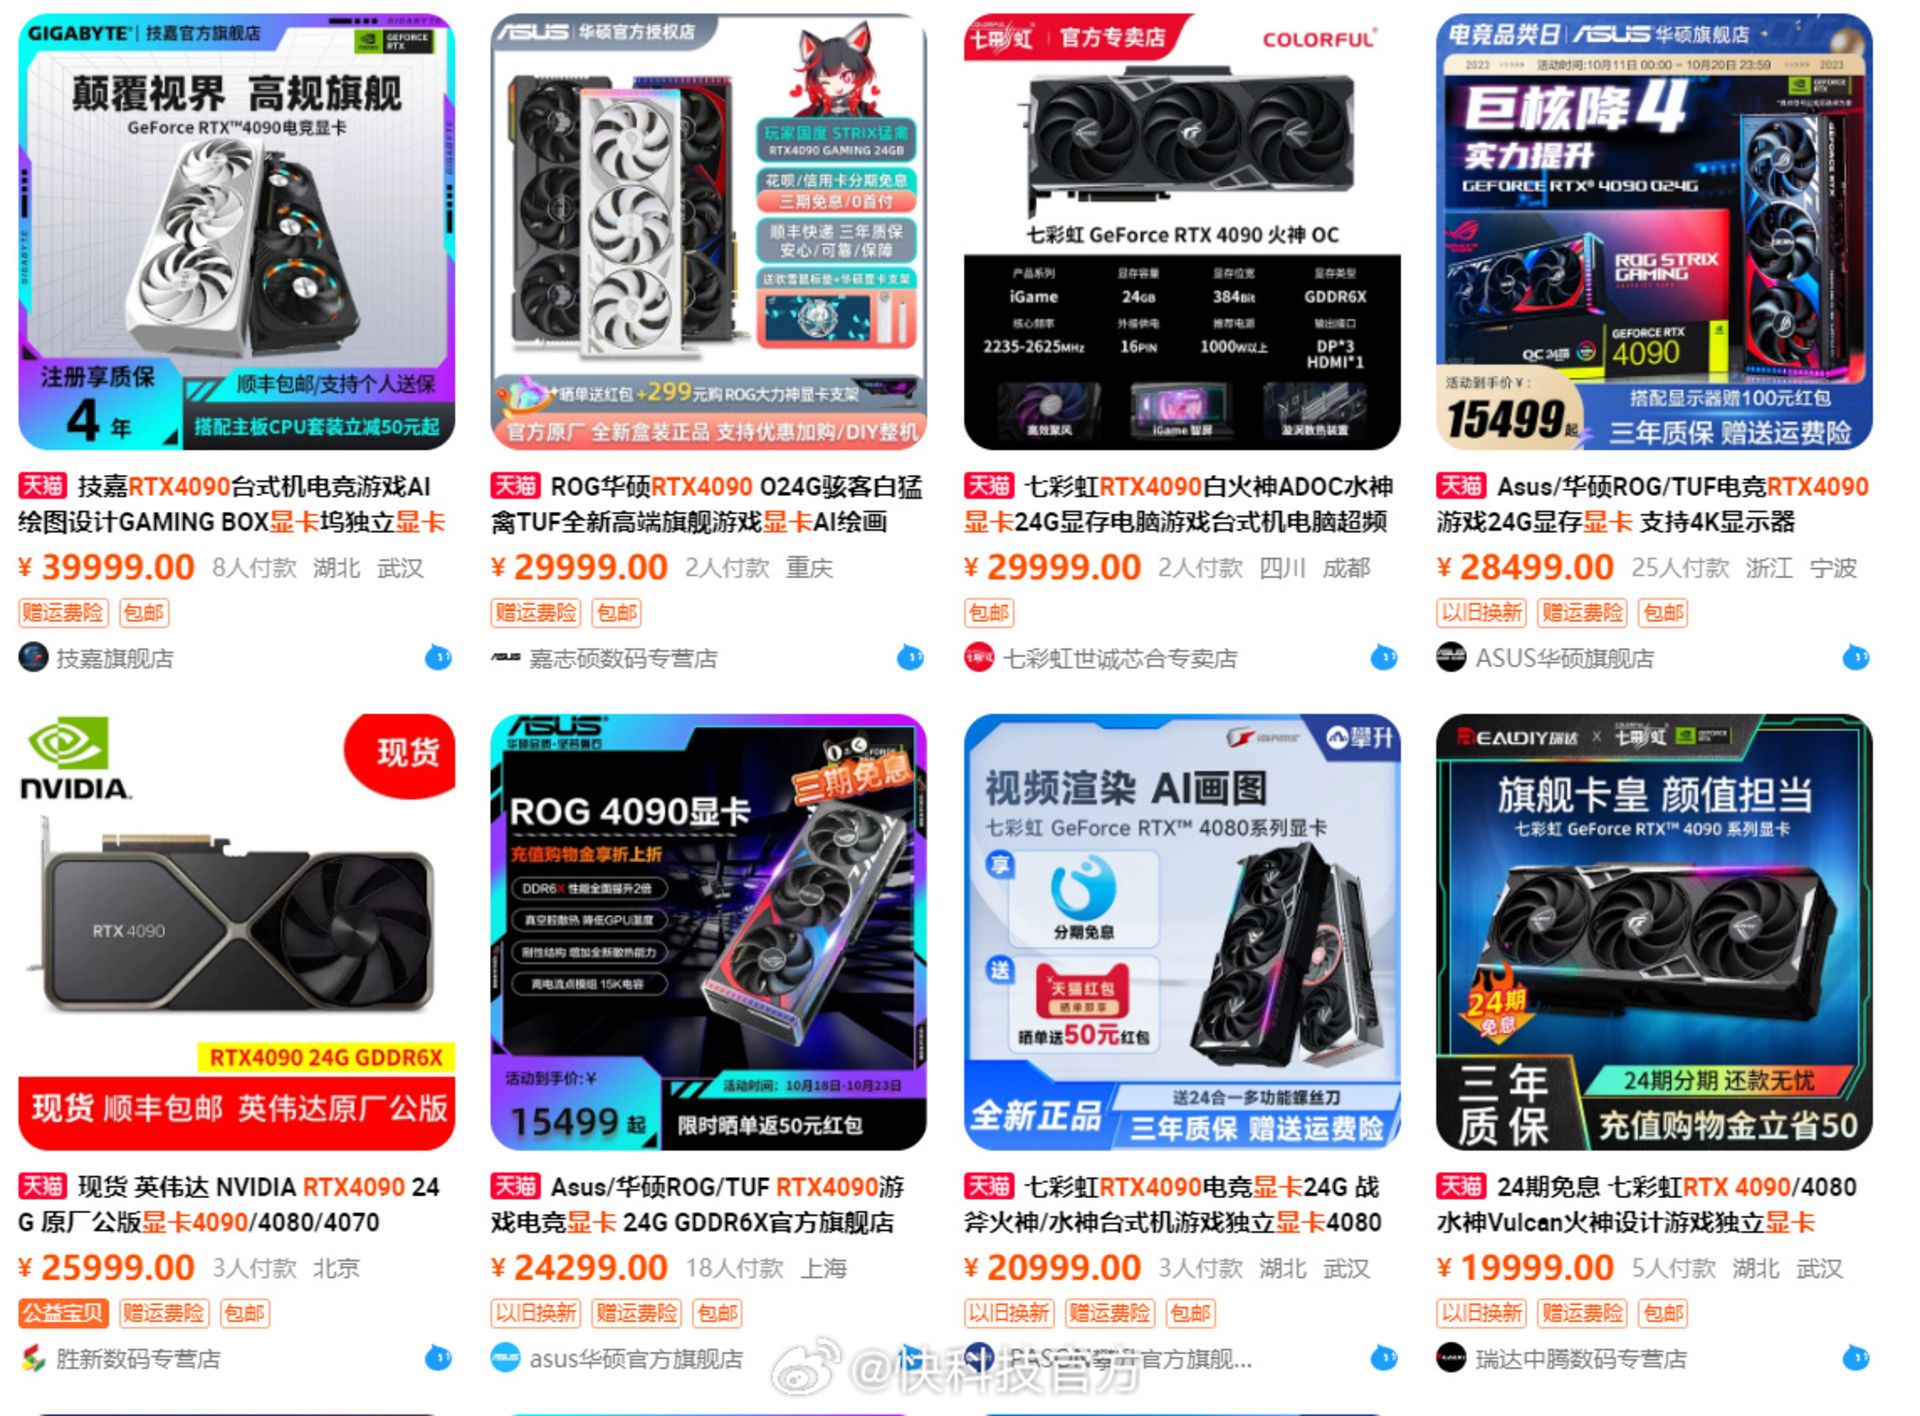 قیمت کارت گرافیک RTX 4090 در چین